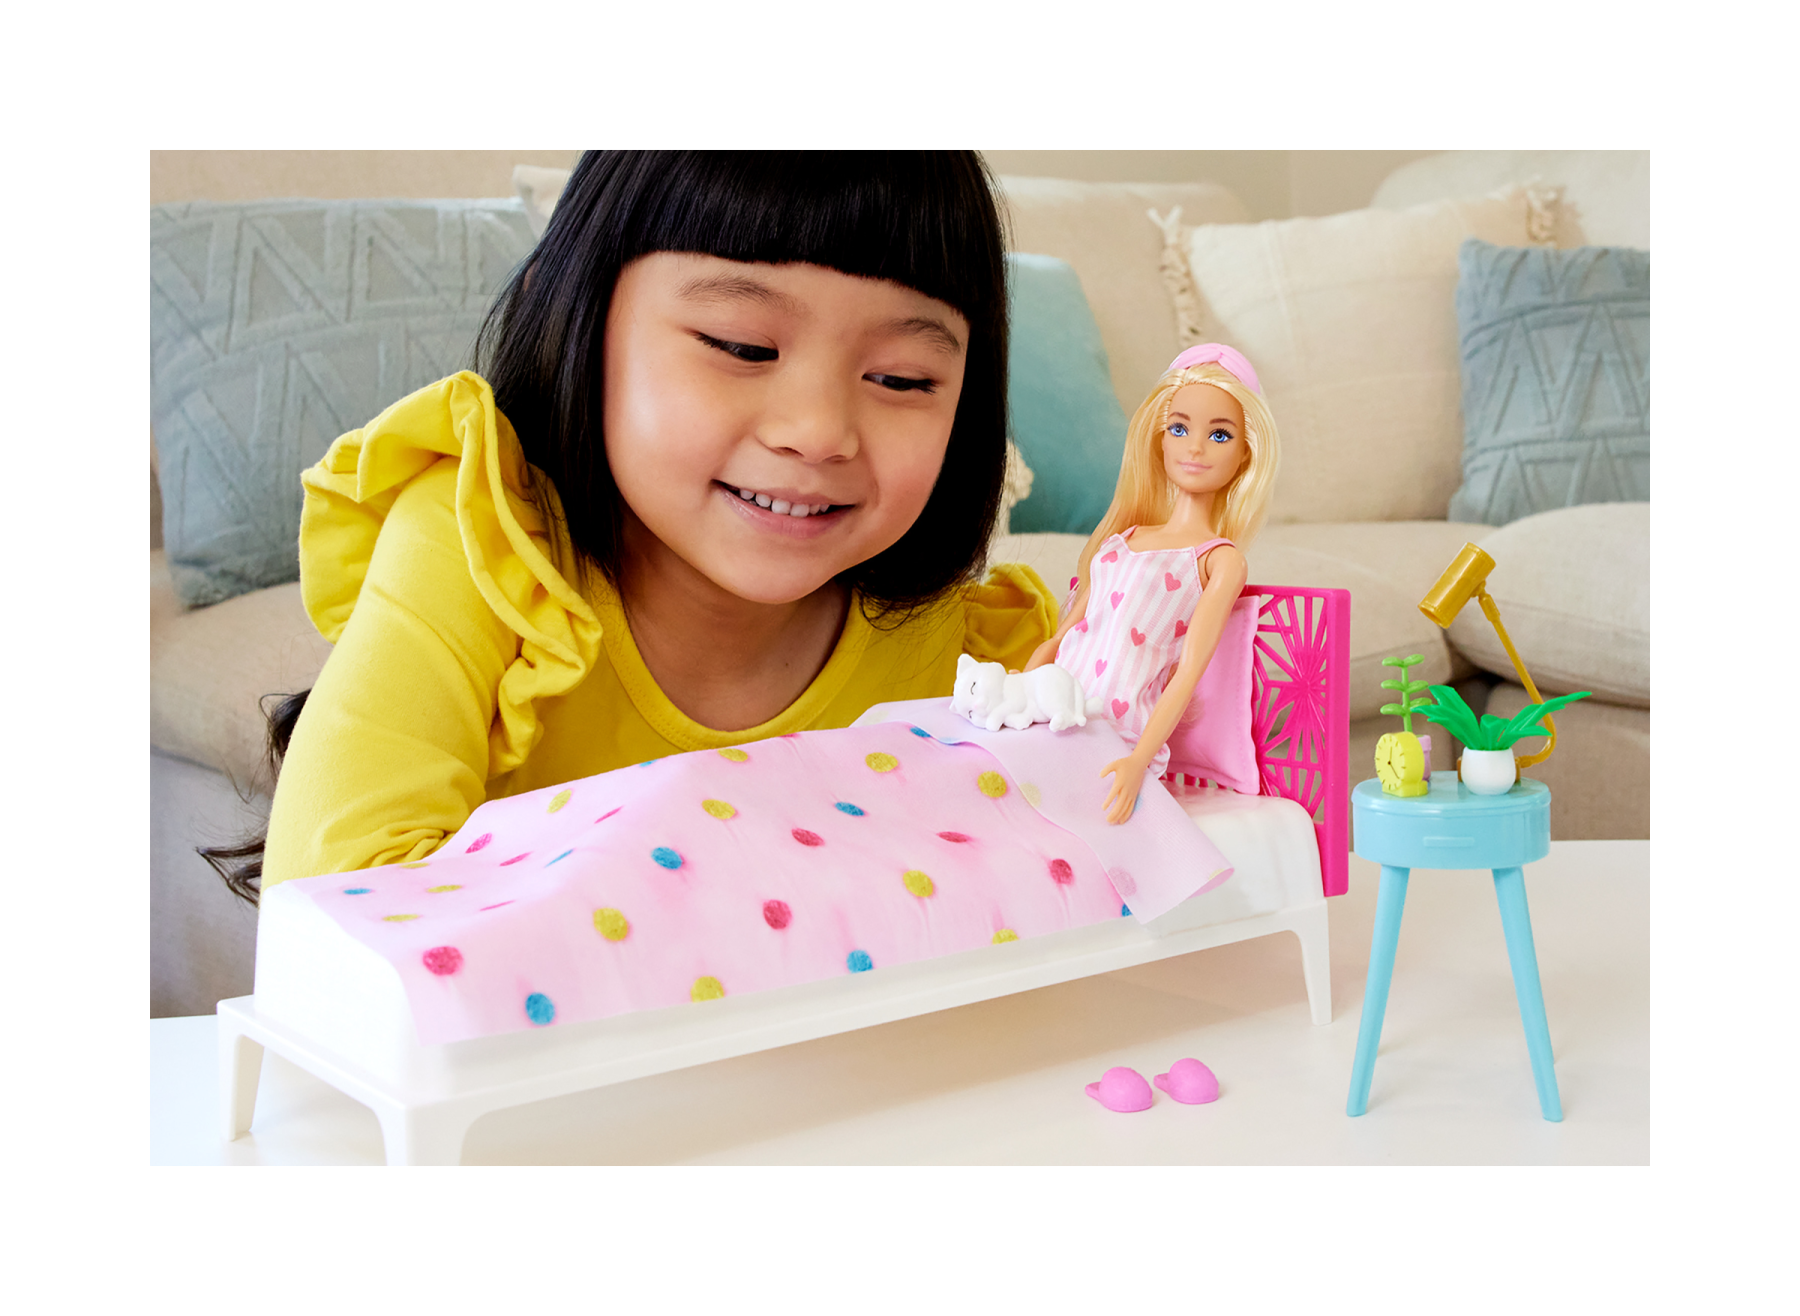 Barbie - set camera da letto di barbie, include una bambola in pigiama rosa e pantofole, un gattino, letto, specchiera e comodino, 20+ accessori a tema, 3+ anni, hpt55 - Barbie